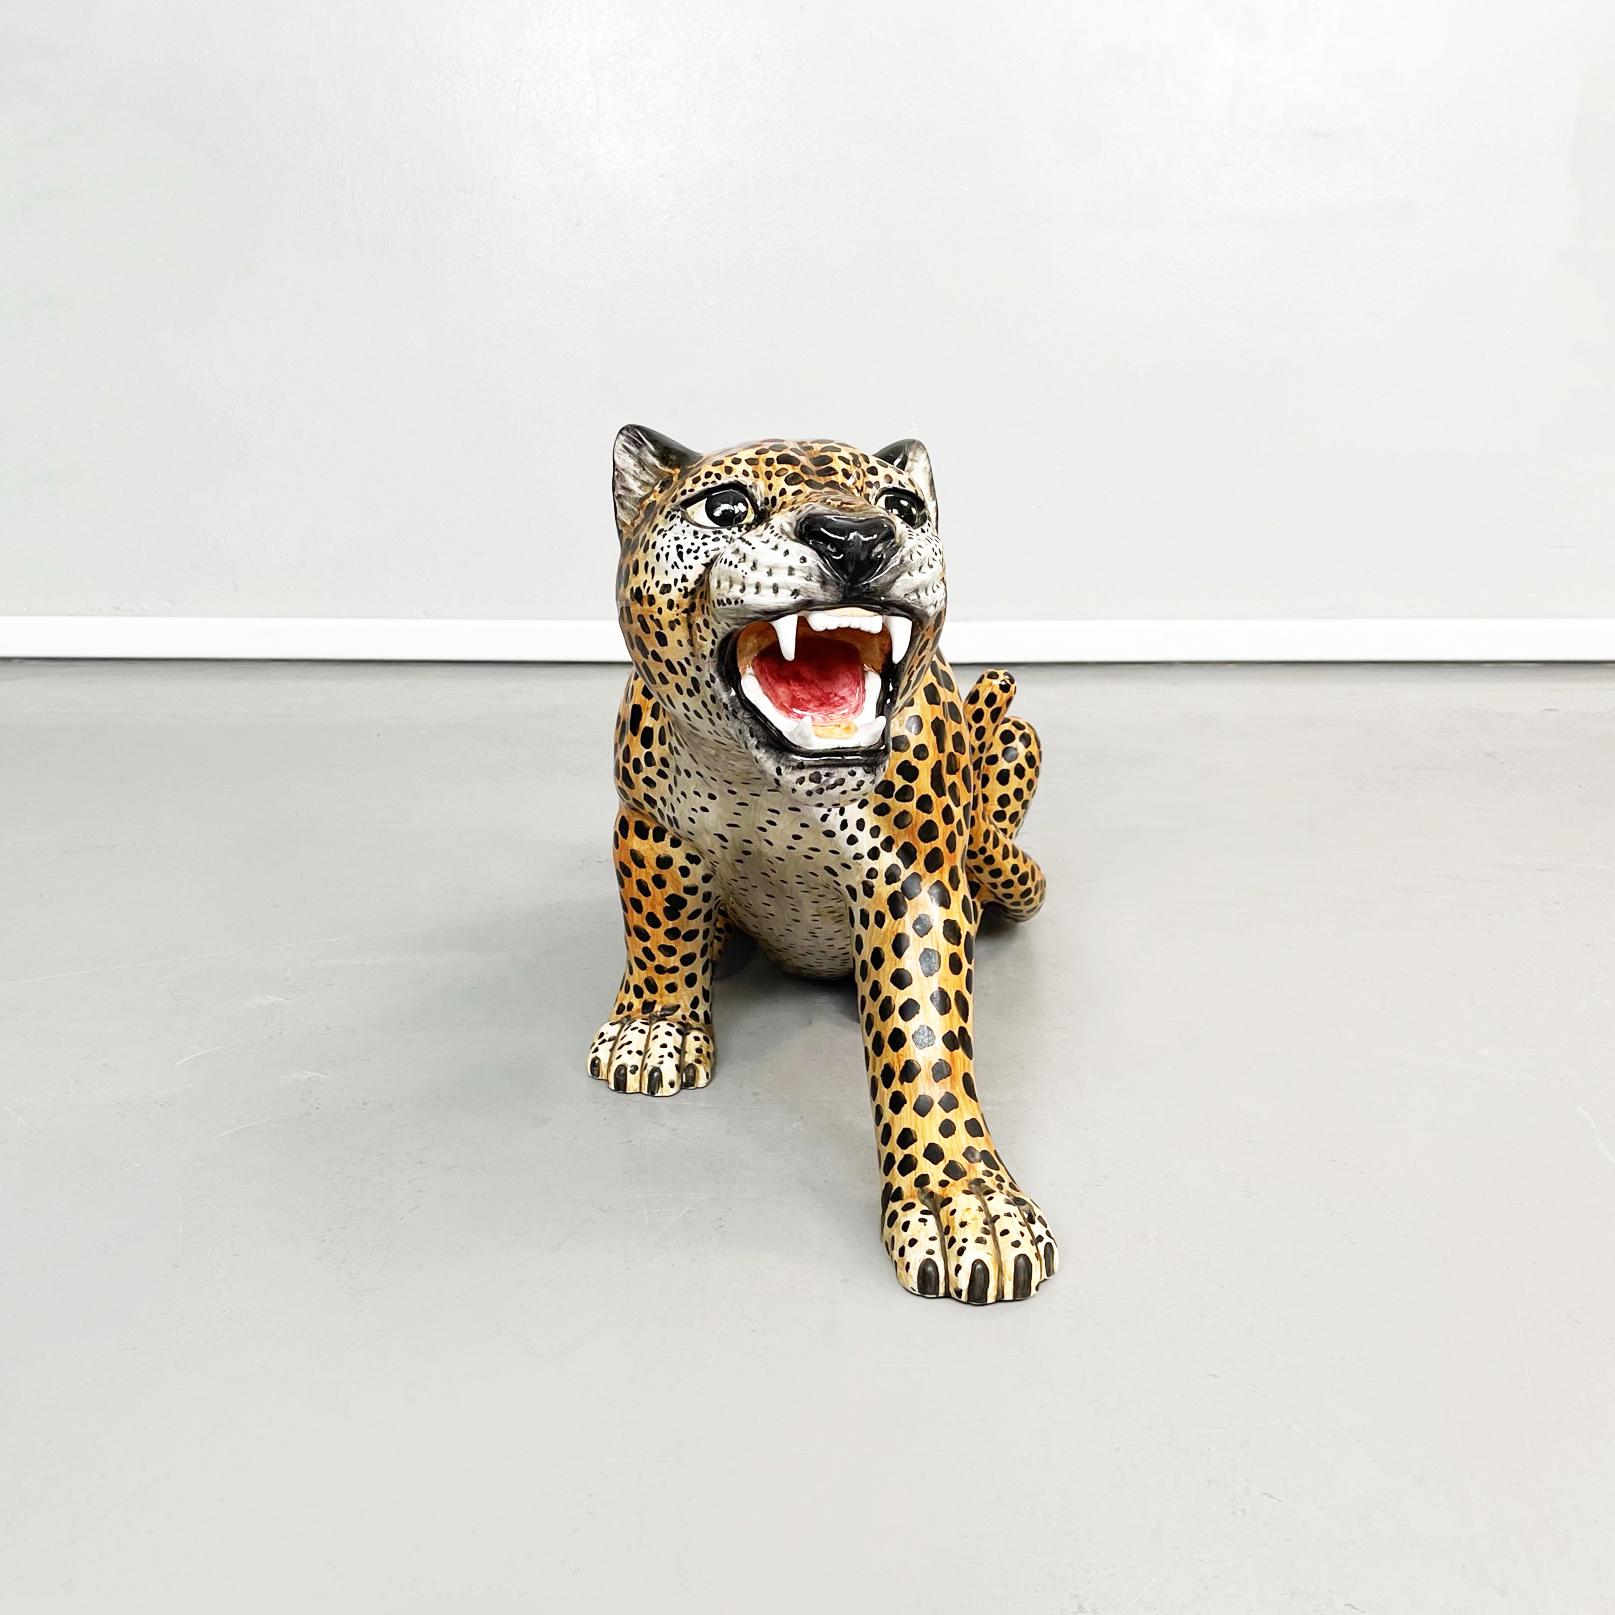 Italienische Mid-Century Modern Keramik-Statue einer Gepardenkatze, 1960er Jahre
Keramische Statue eines Geparden in Verteidigungsstellung. Das Tier hat ein weit geöffnetes Maul und offene Augen. Fein ausgearbeitet und bemalt.
1960s.
Sehr guter